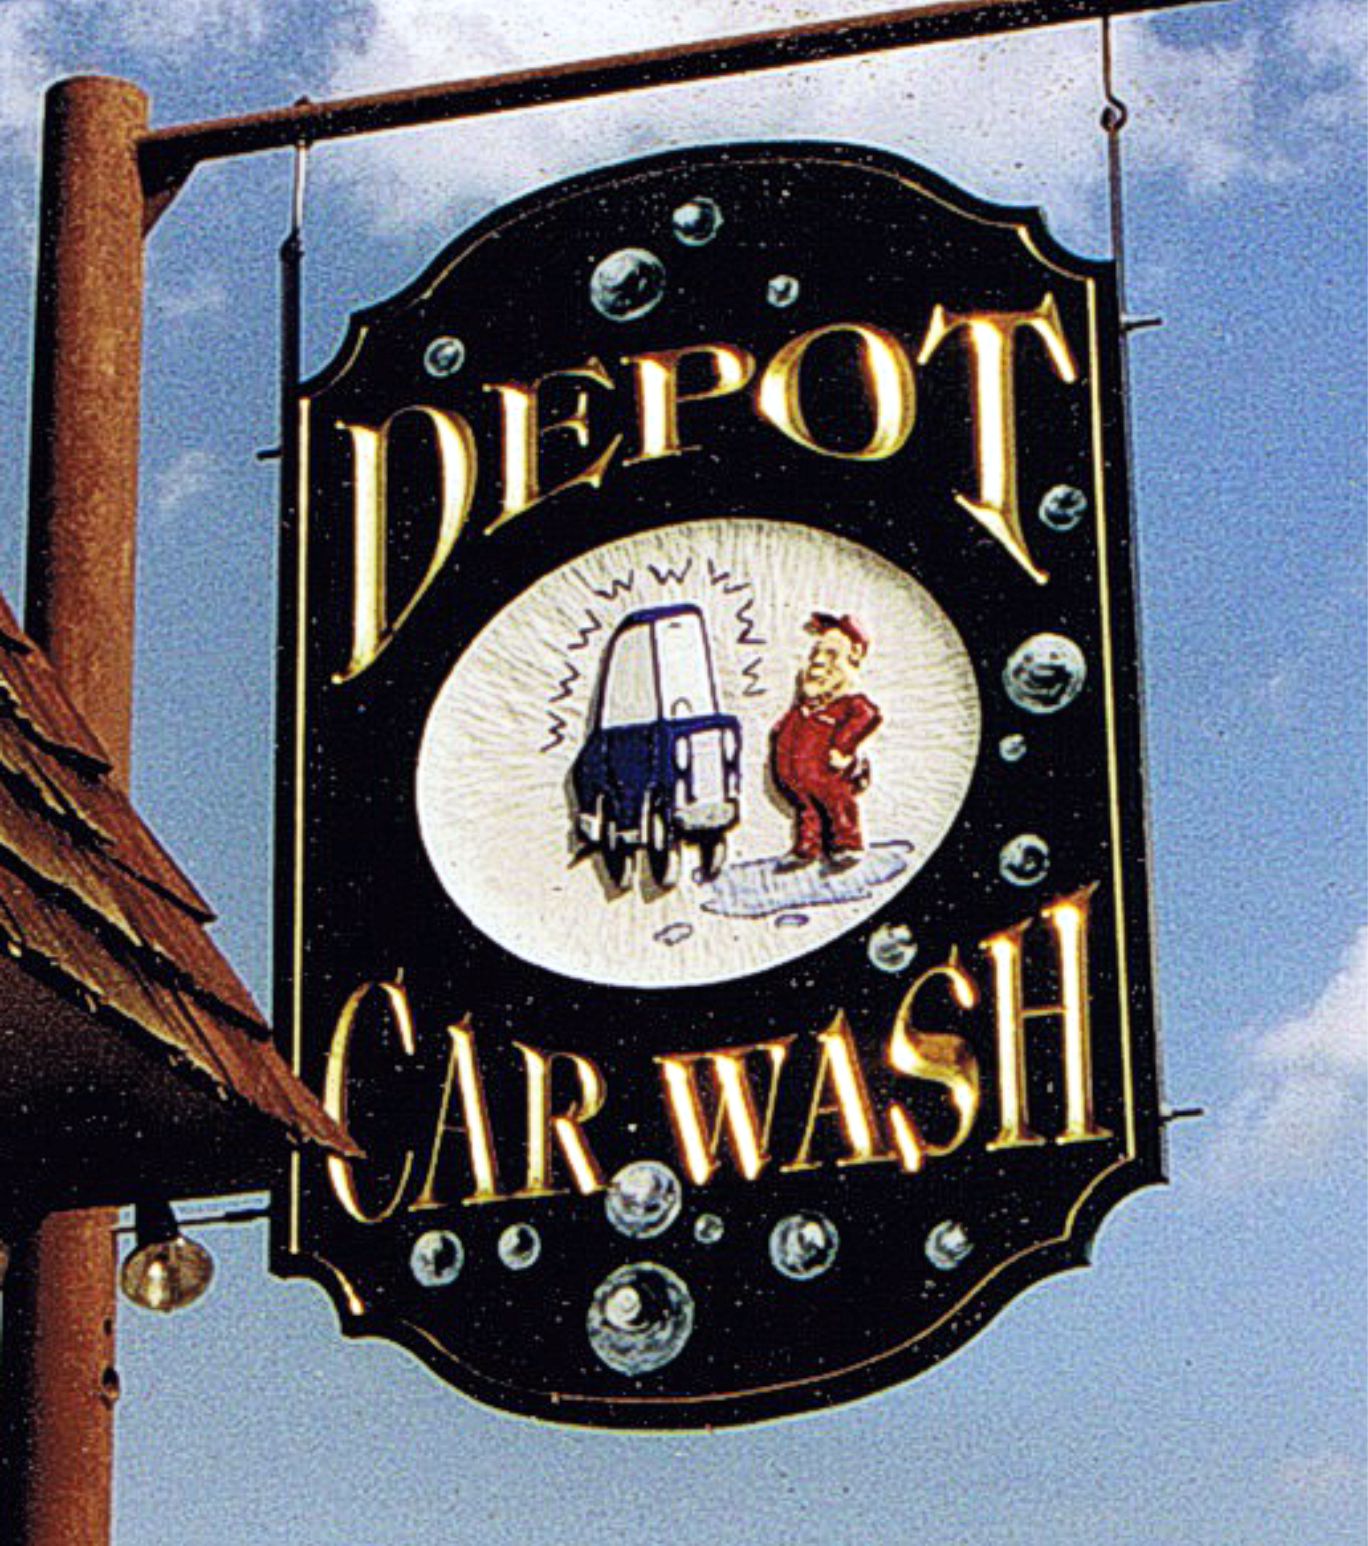 Depot-Car-Wash